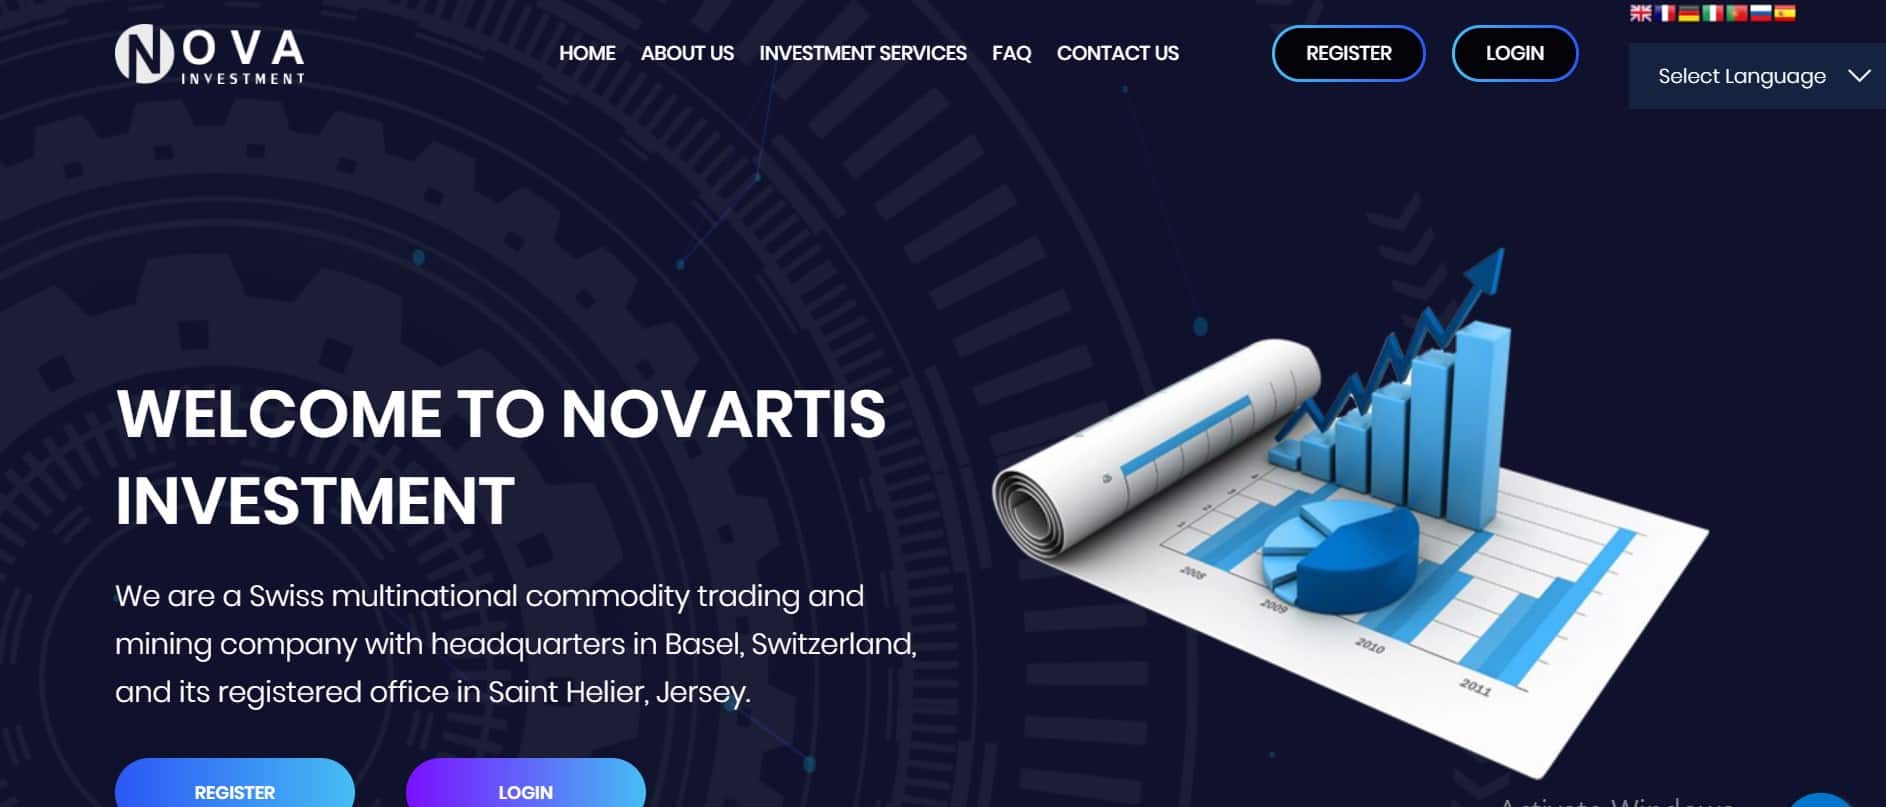 NovaInvests website